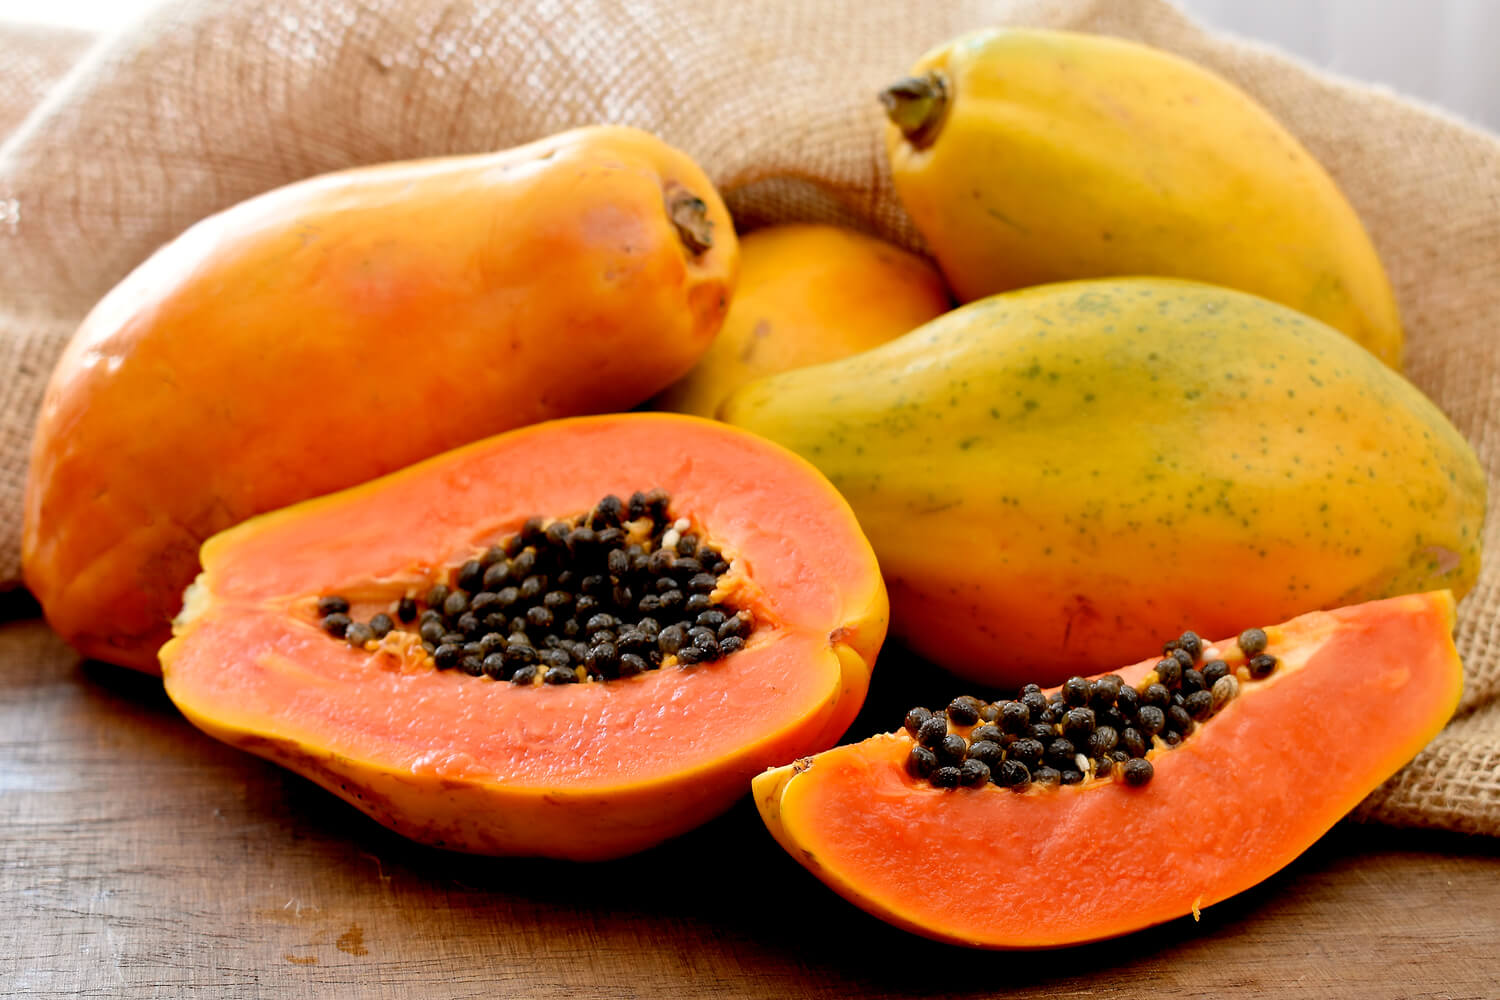 papaya during pregnancy